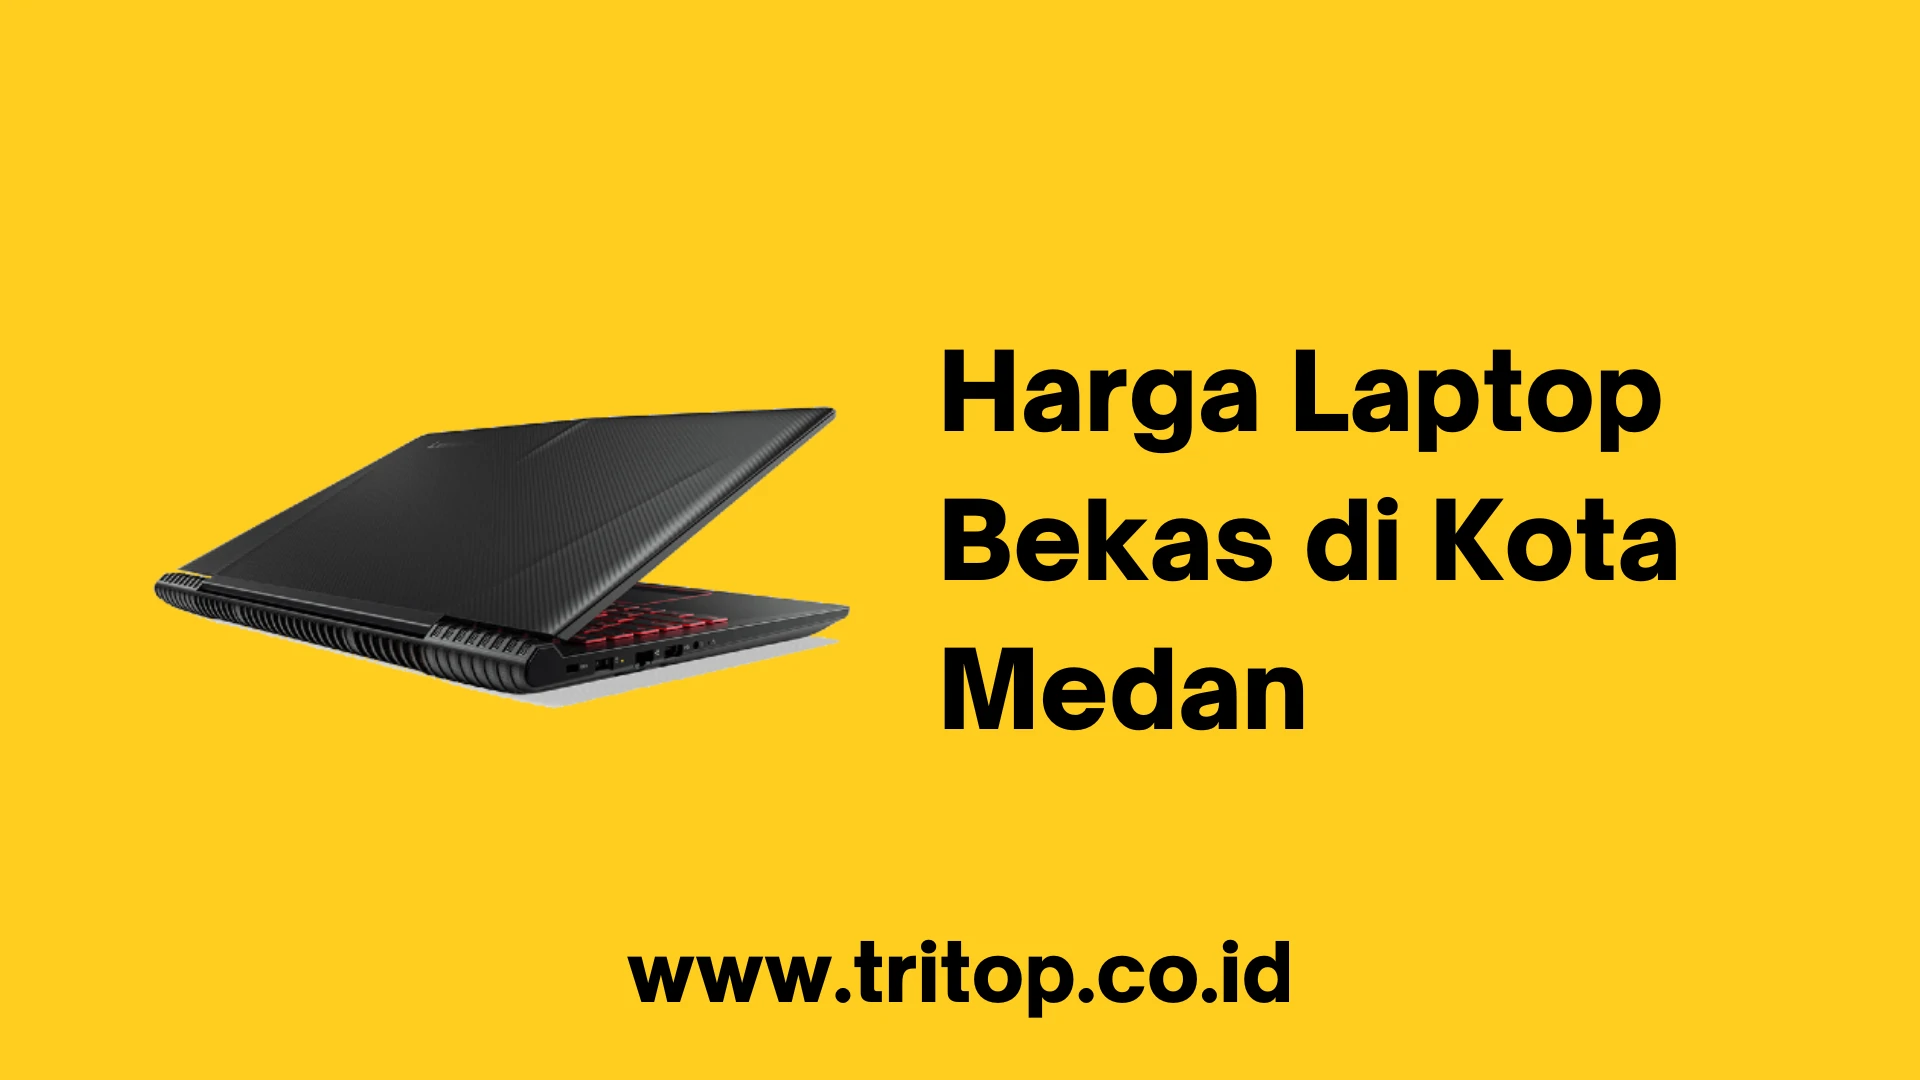 Harga Laptop Bekas di Kota Medan